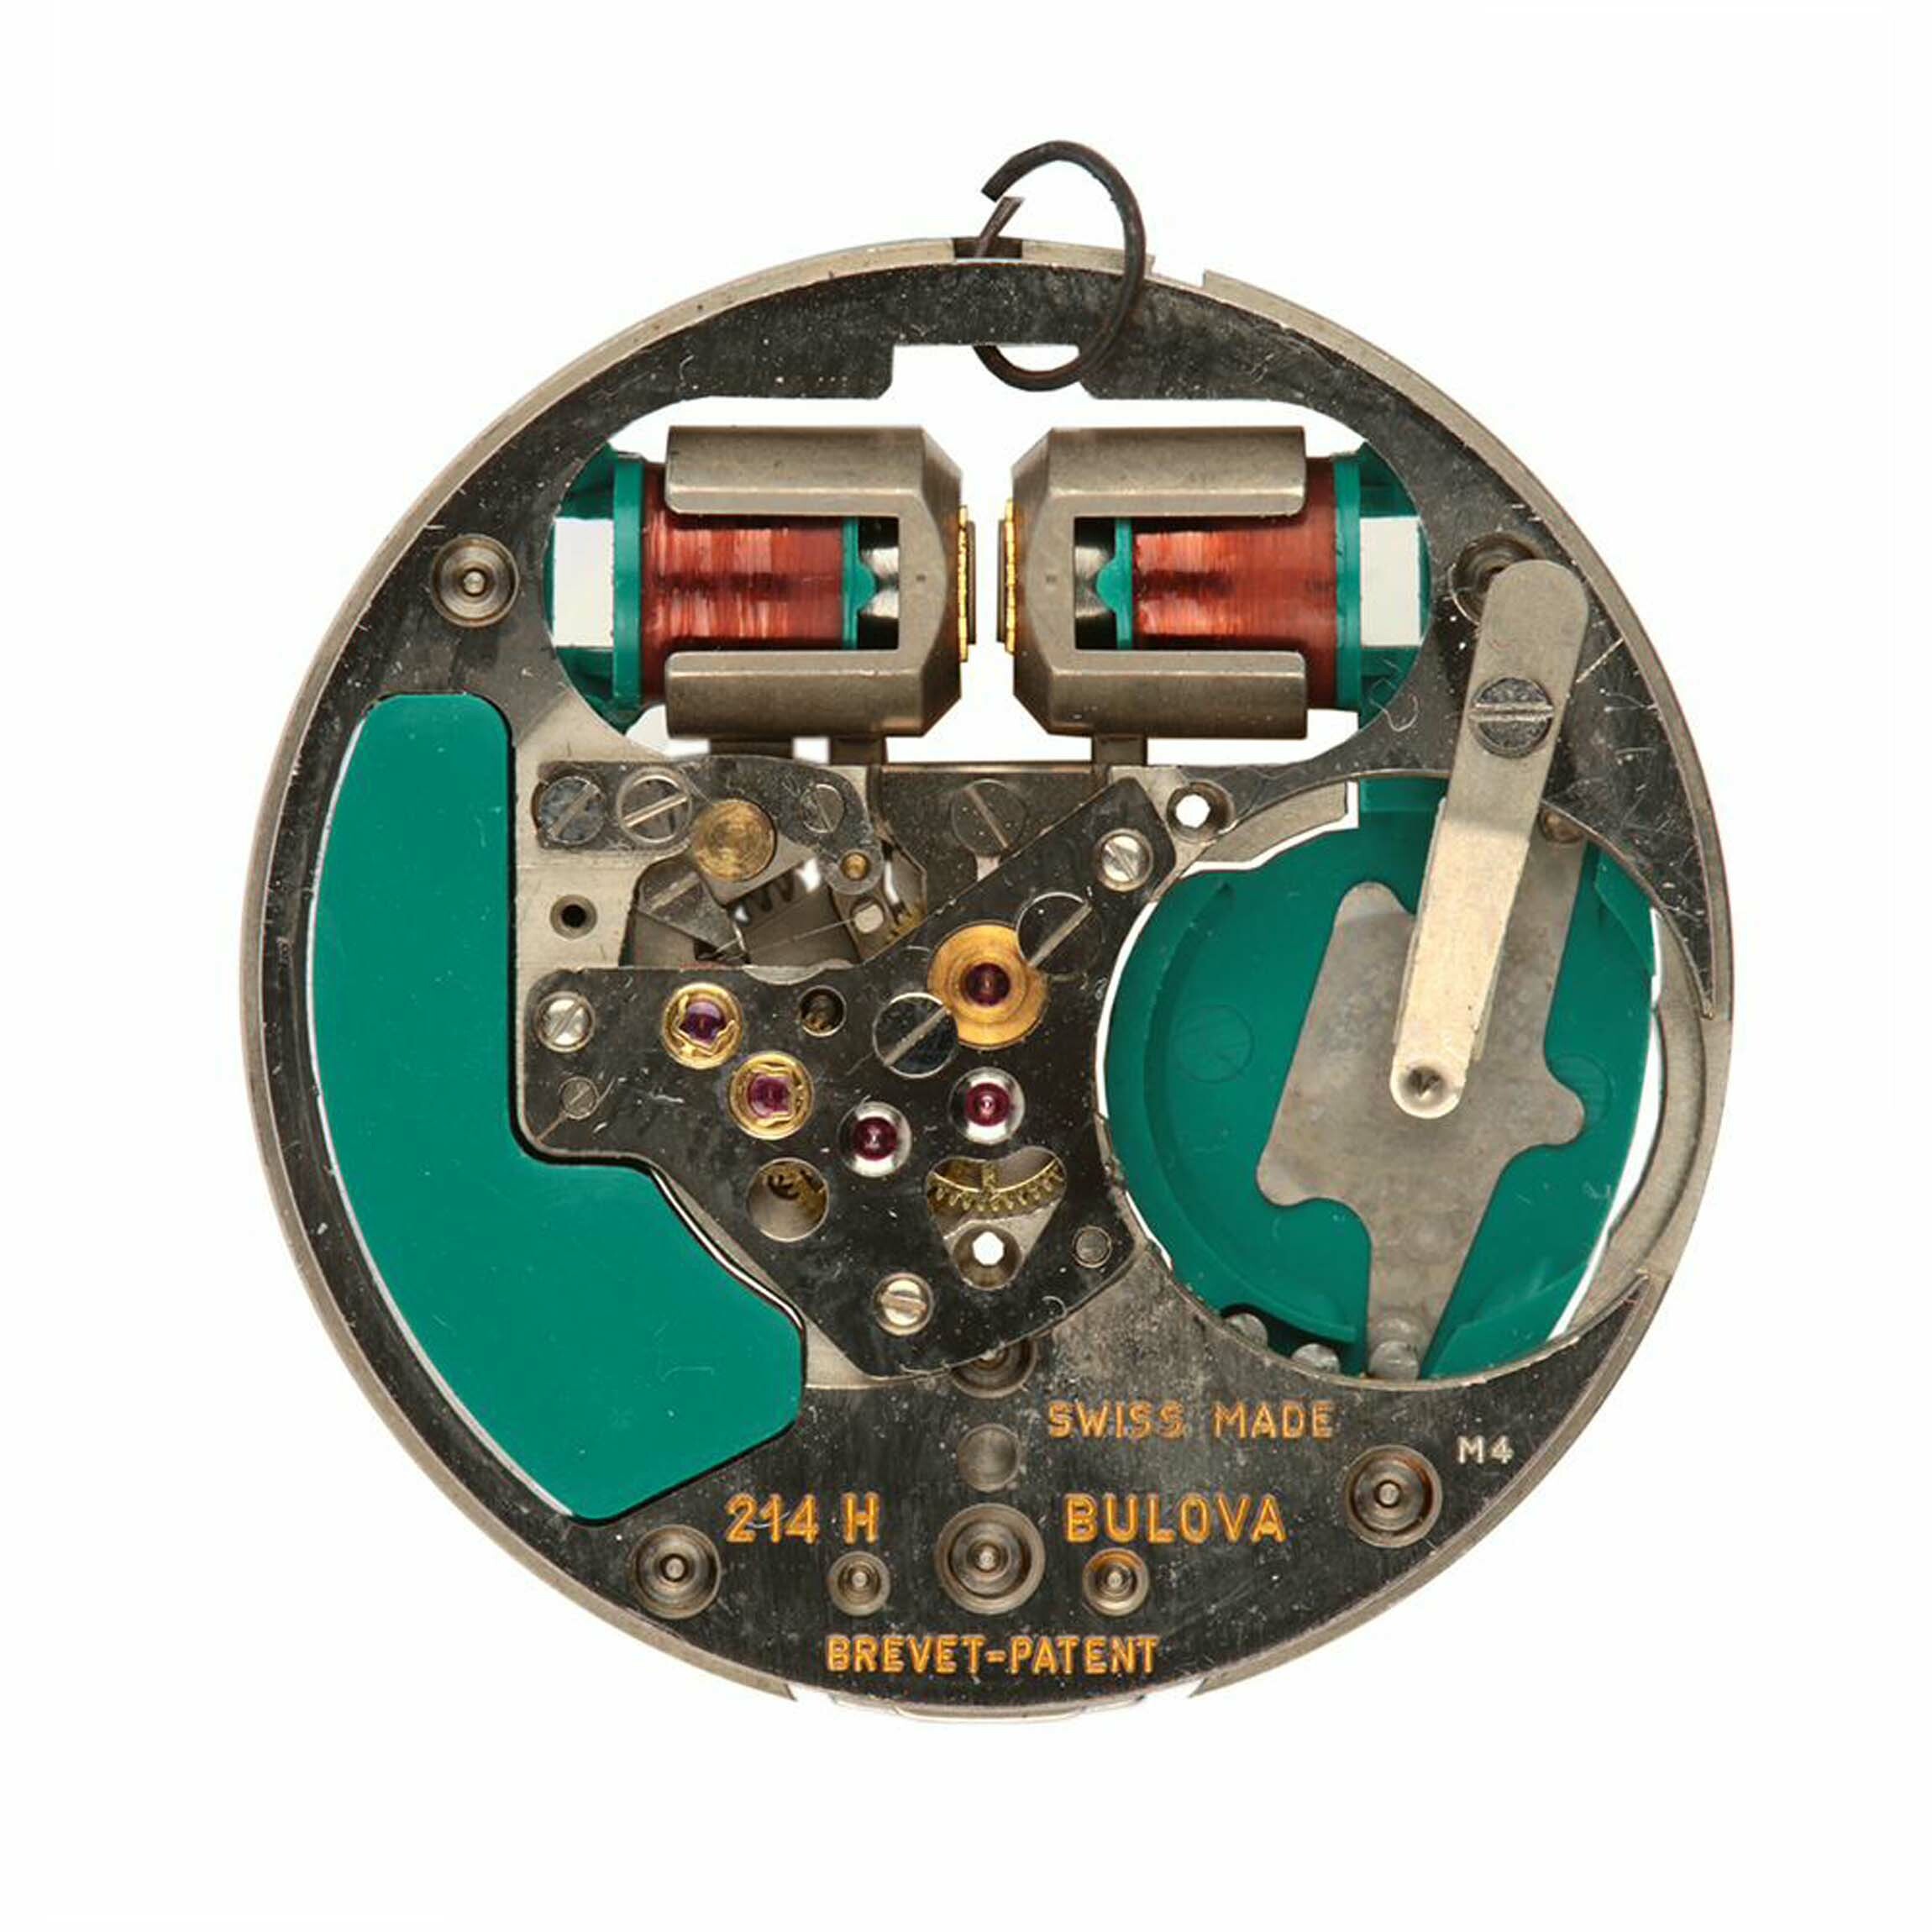 Armbanduhrwerk, Bulova, Schweiz, 1964 (Deutsches Uhrenmuseum CC BY-SA)